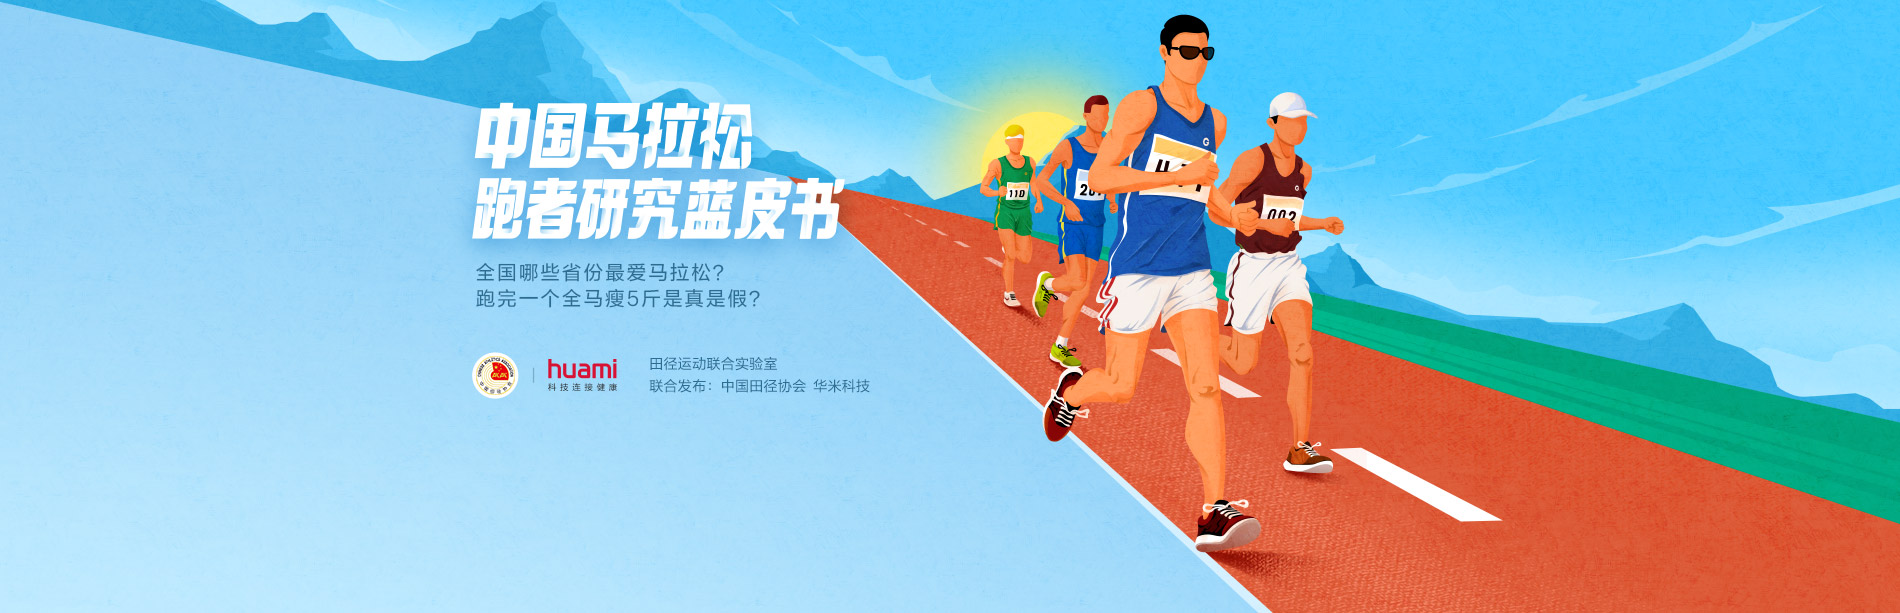 中国田径协会和华米科技发布马拉松跑者研究蓝皮书